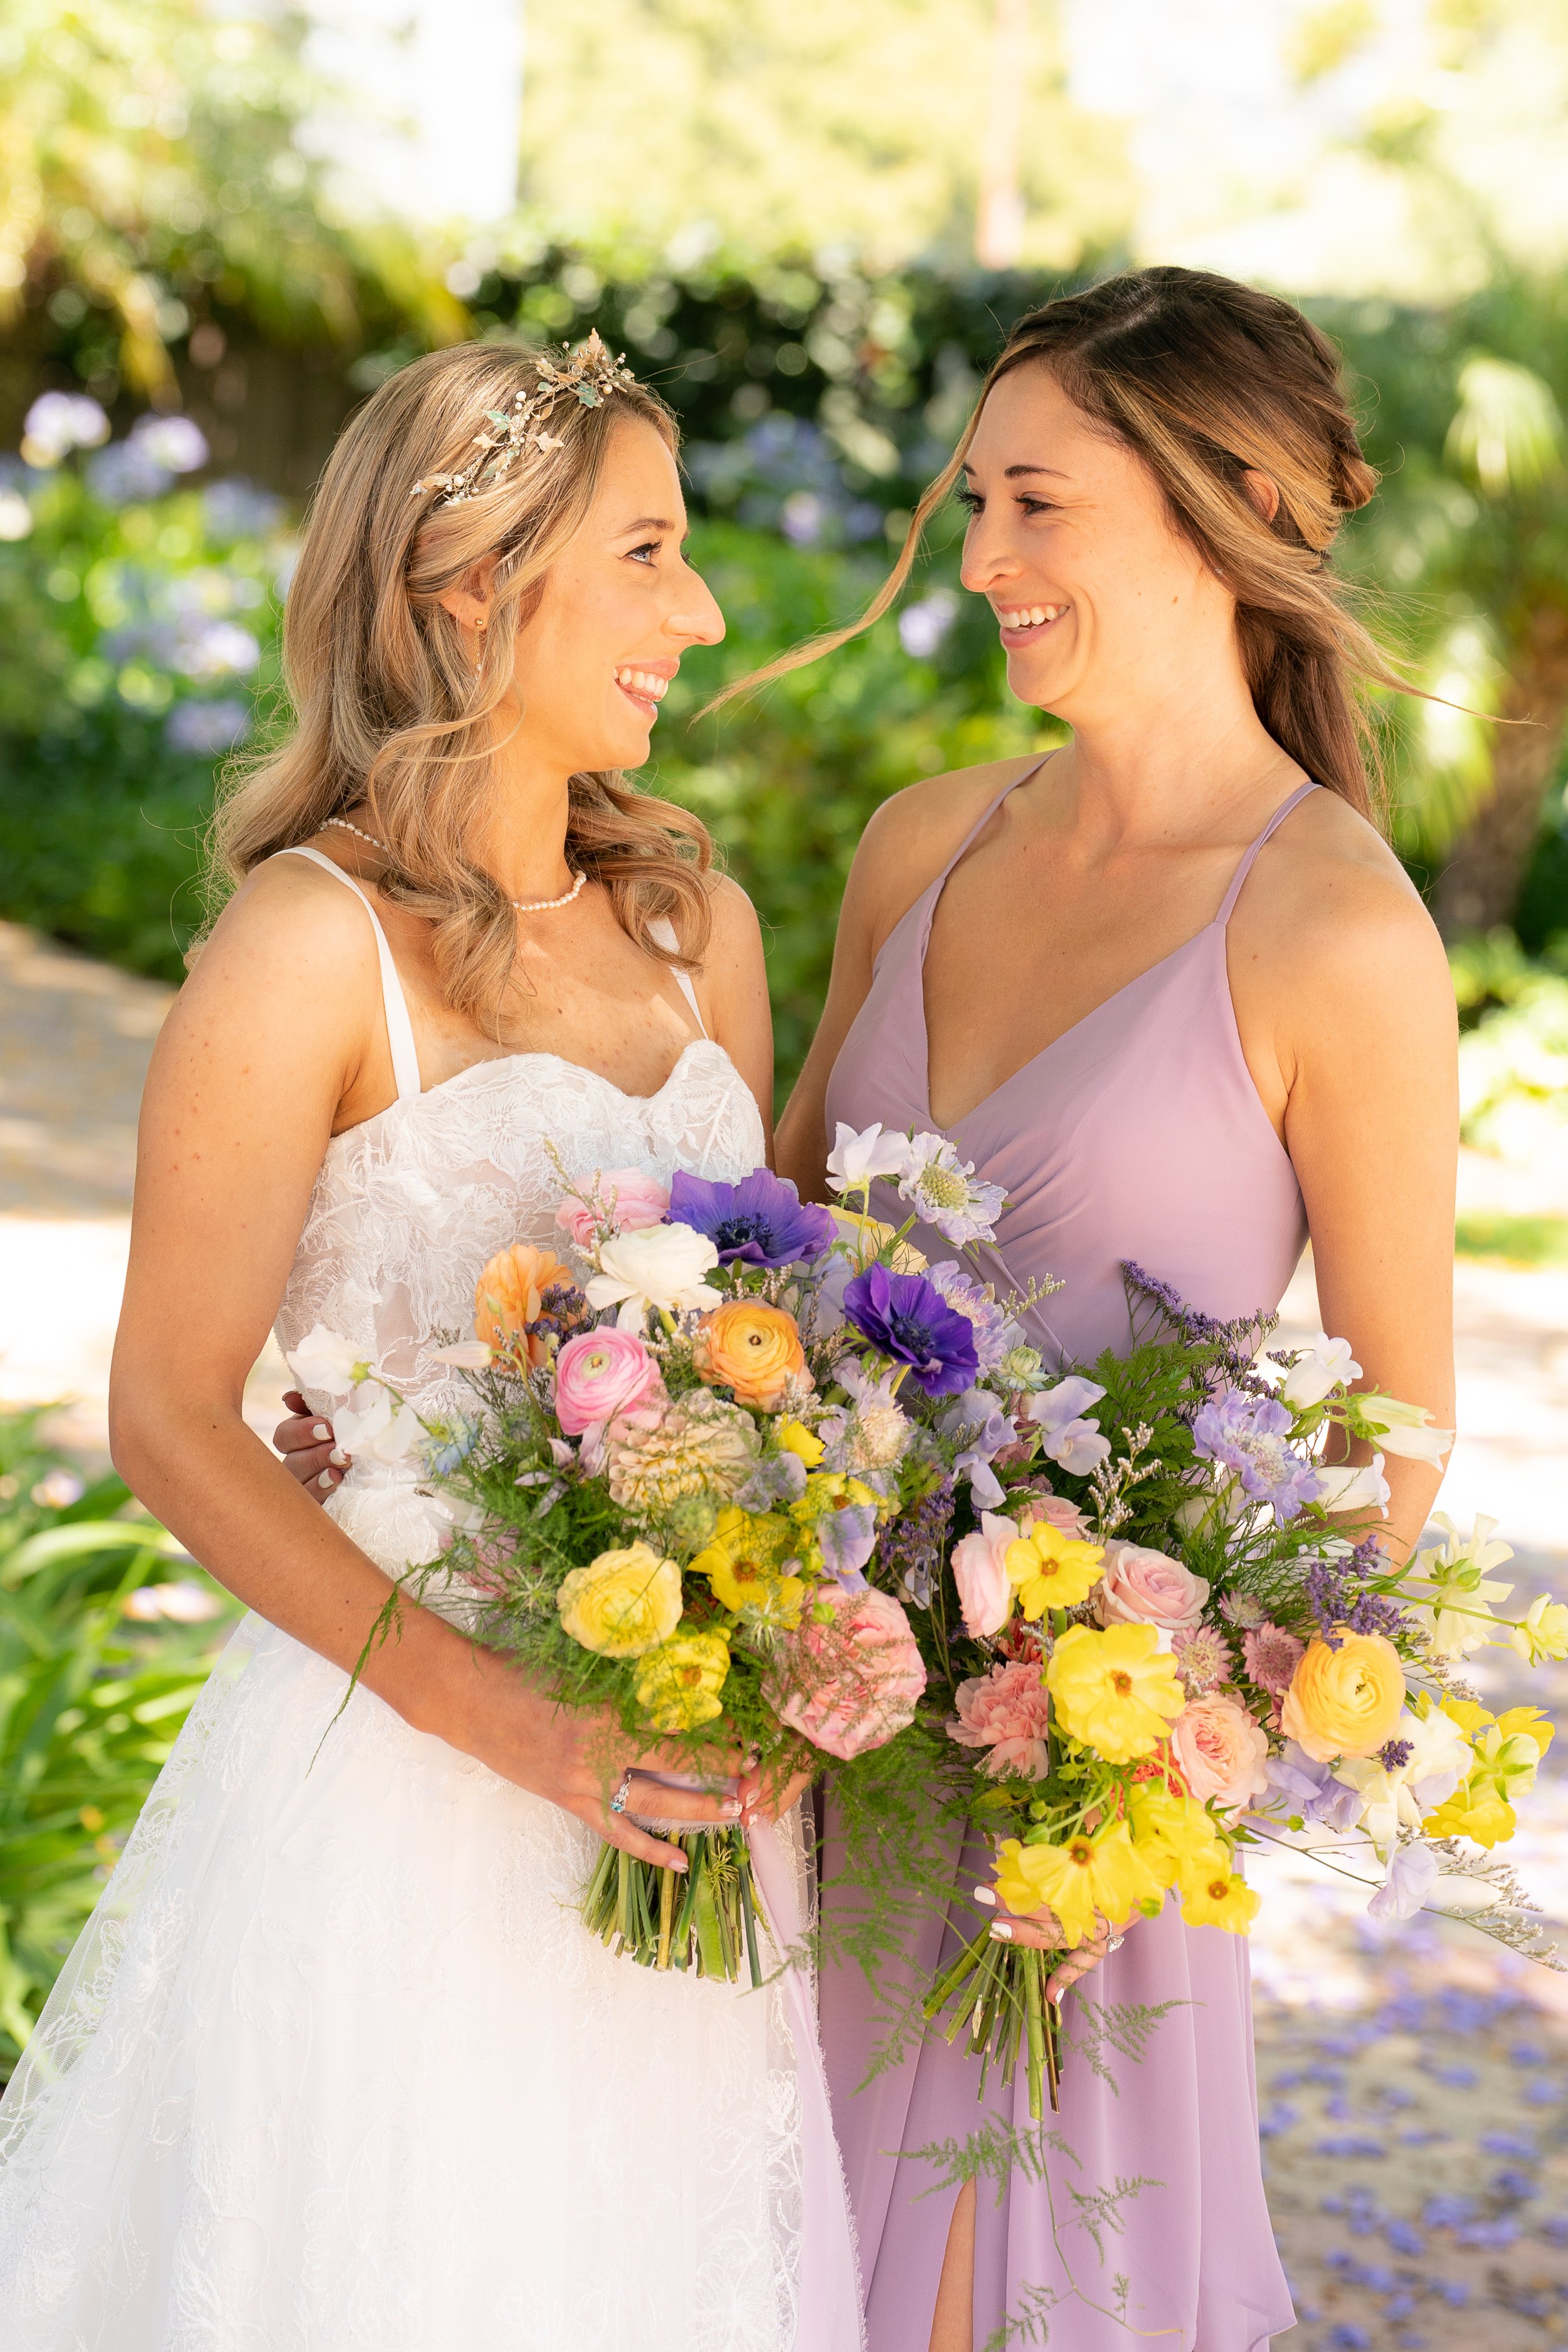 www.santabarbarawedding.com | Santa Barbara Club | Jensen Sutta | Julie Steele | Breanna Wilcox | Tomiko Taft | Breanna Jane Botanicals | Bride and Bridesmaid with Bouquets